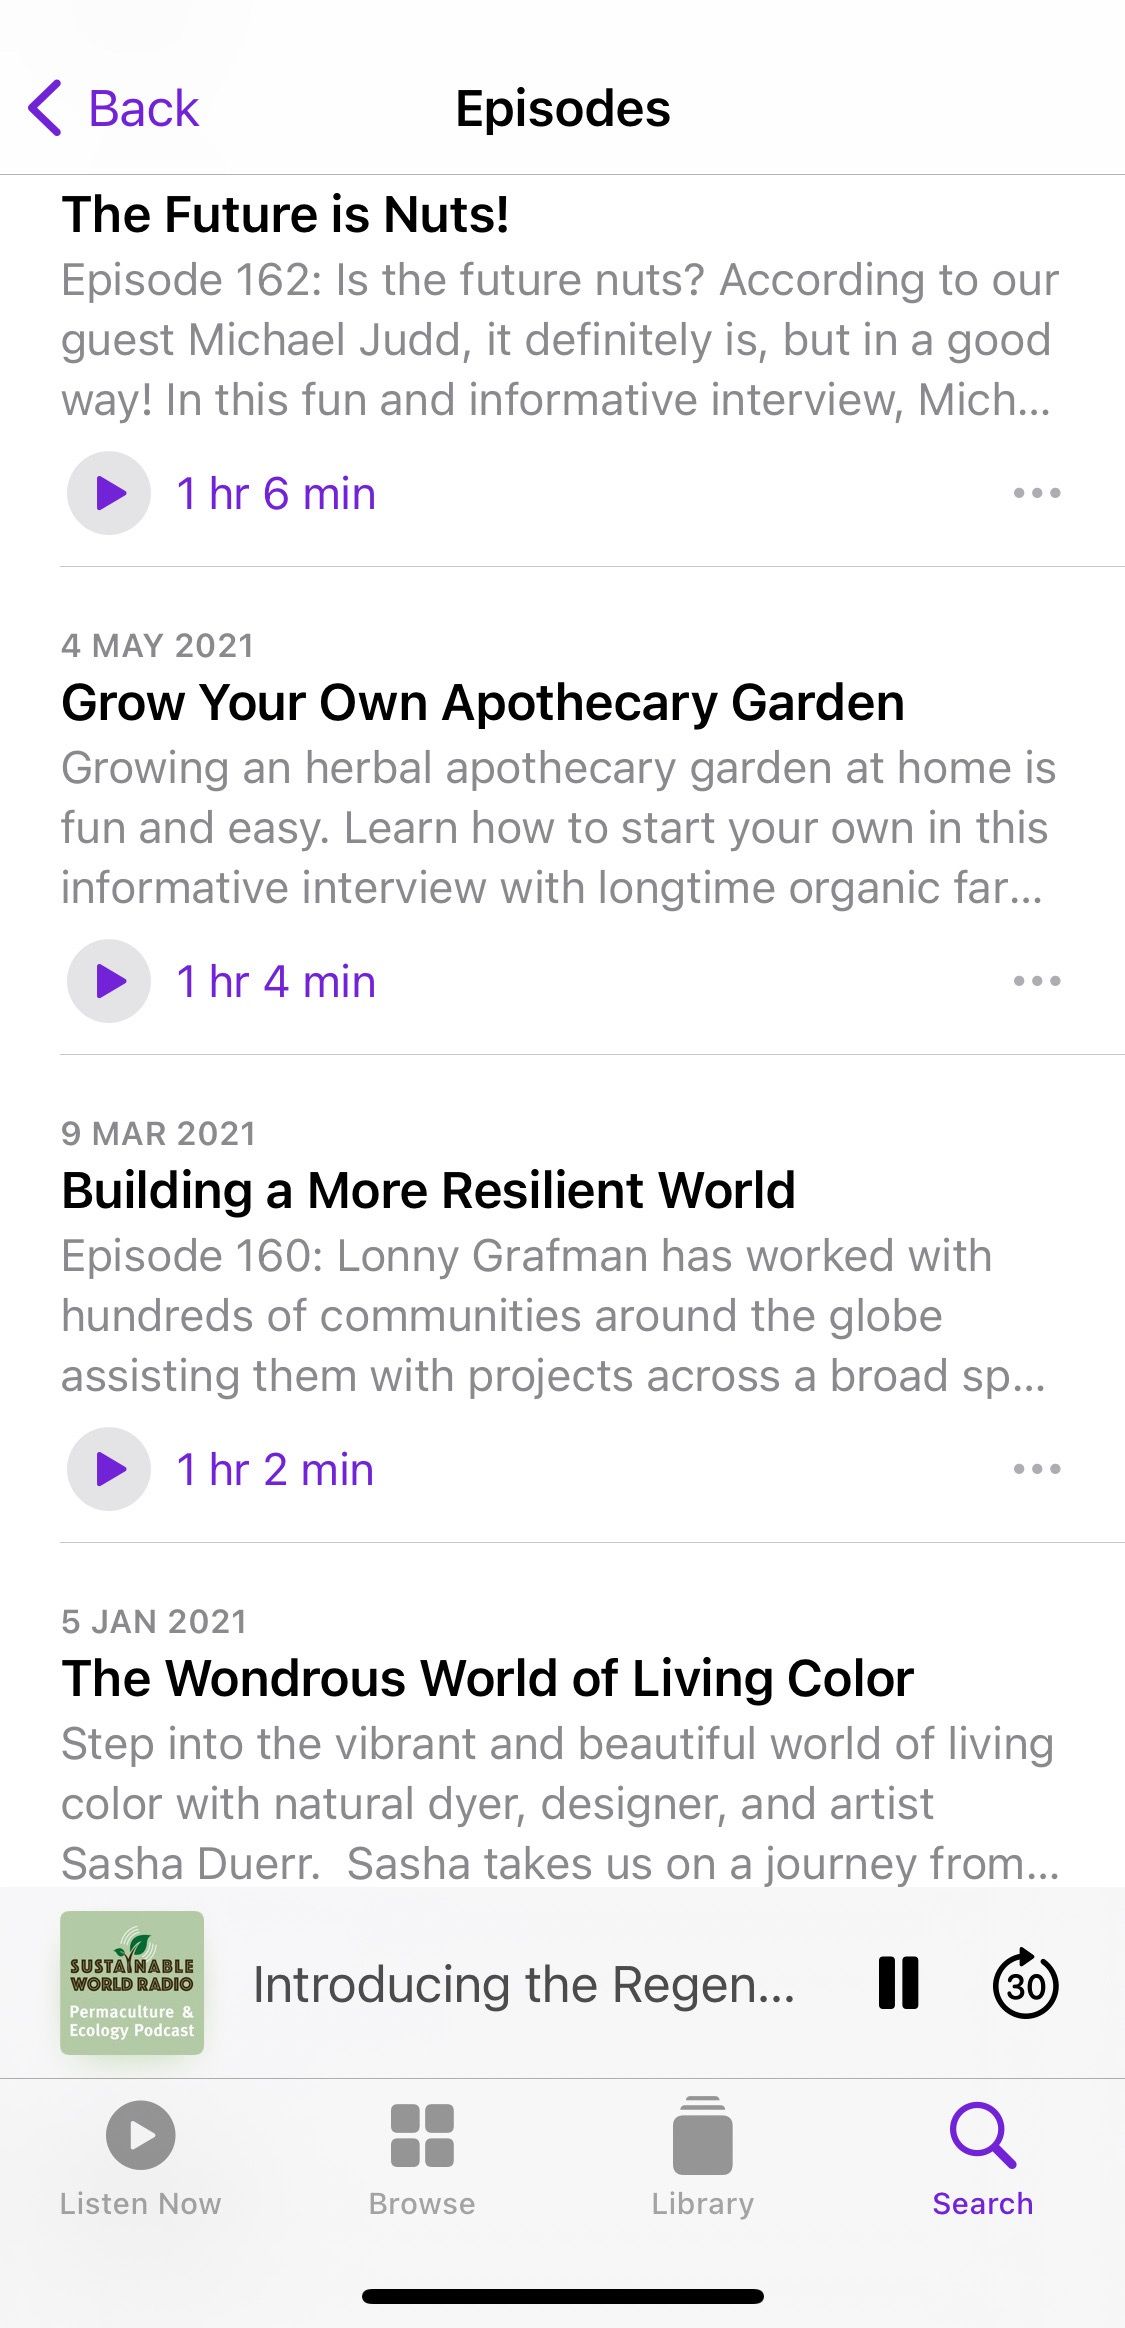 Screenshot showing Sustainable World Radio podcast sample episodes